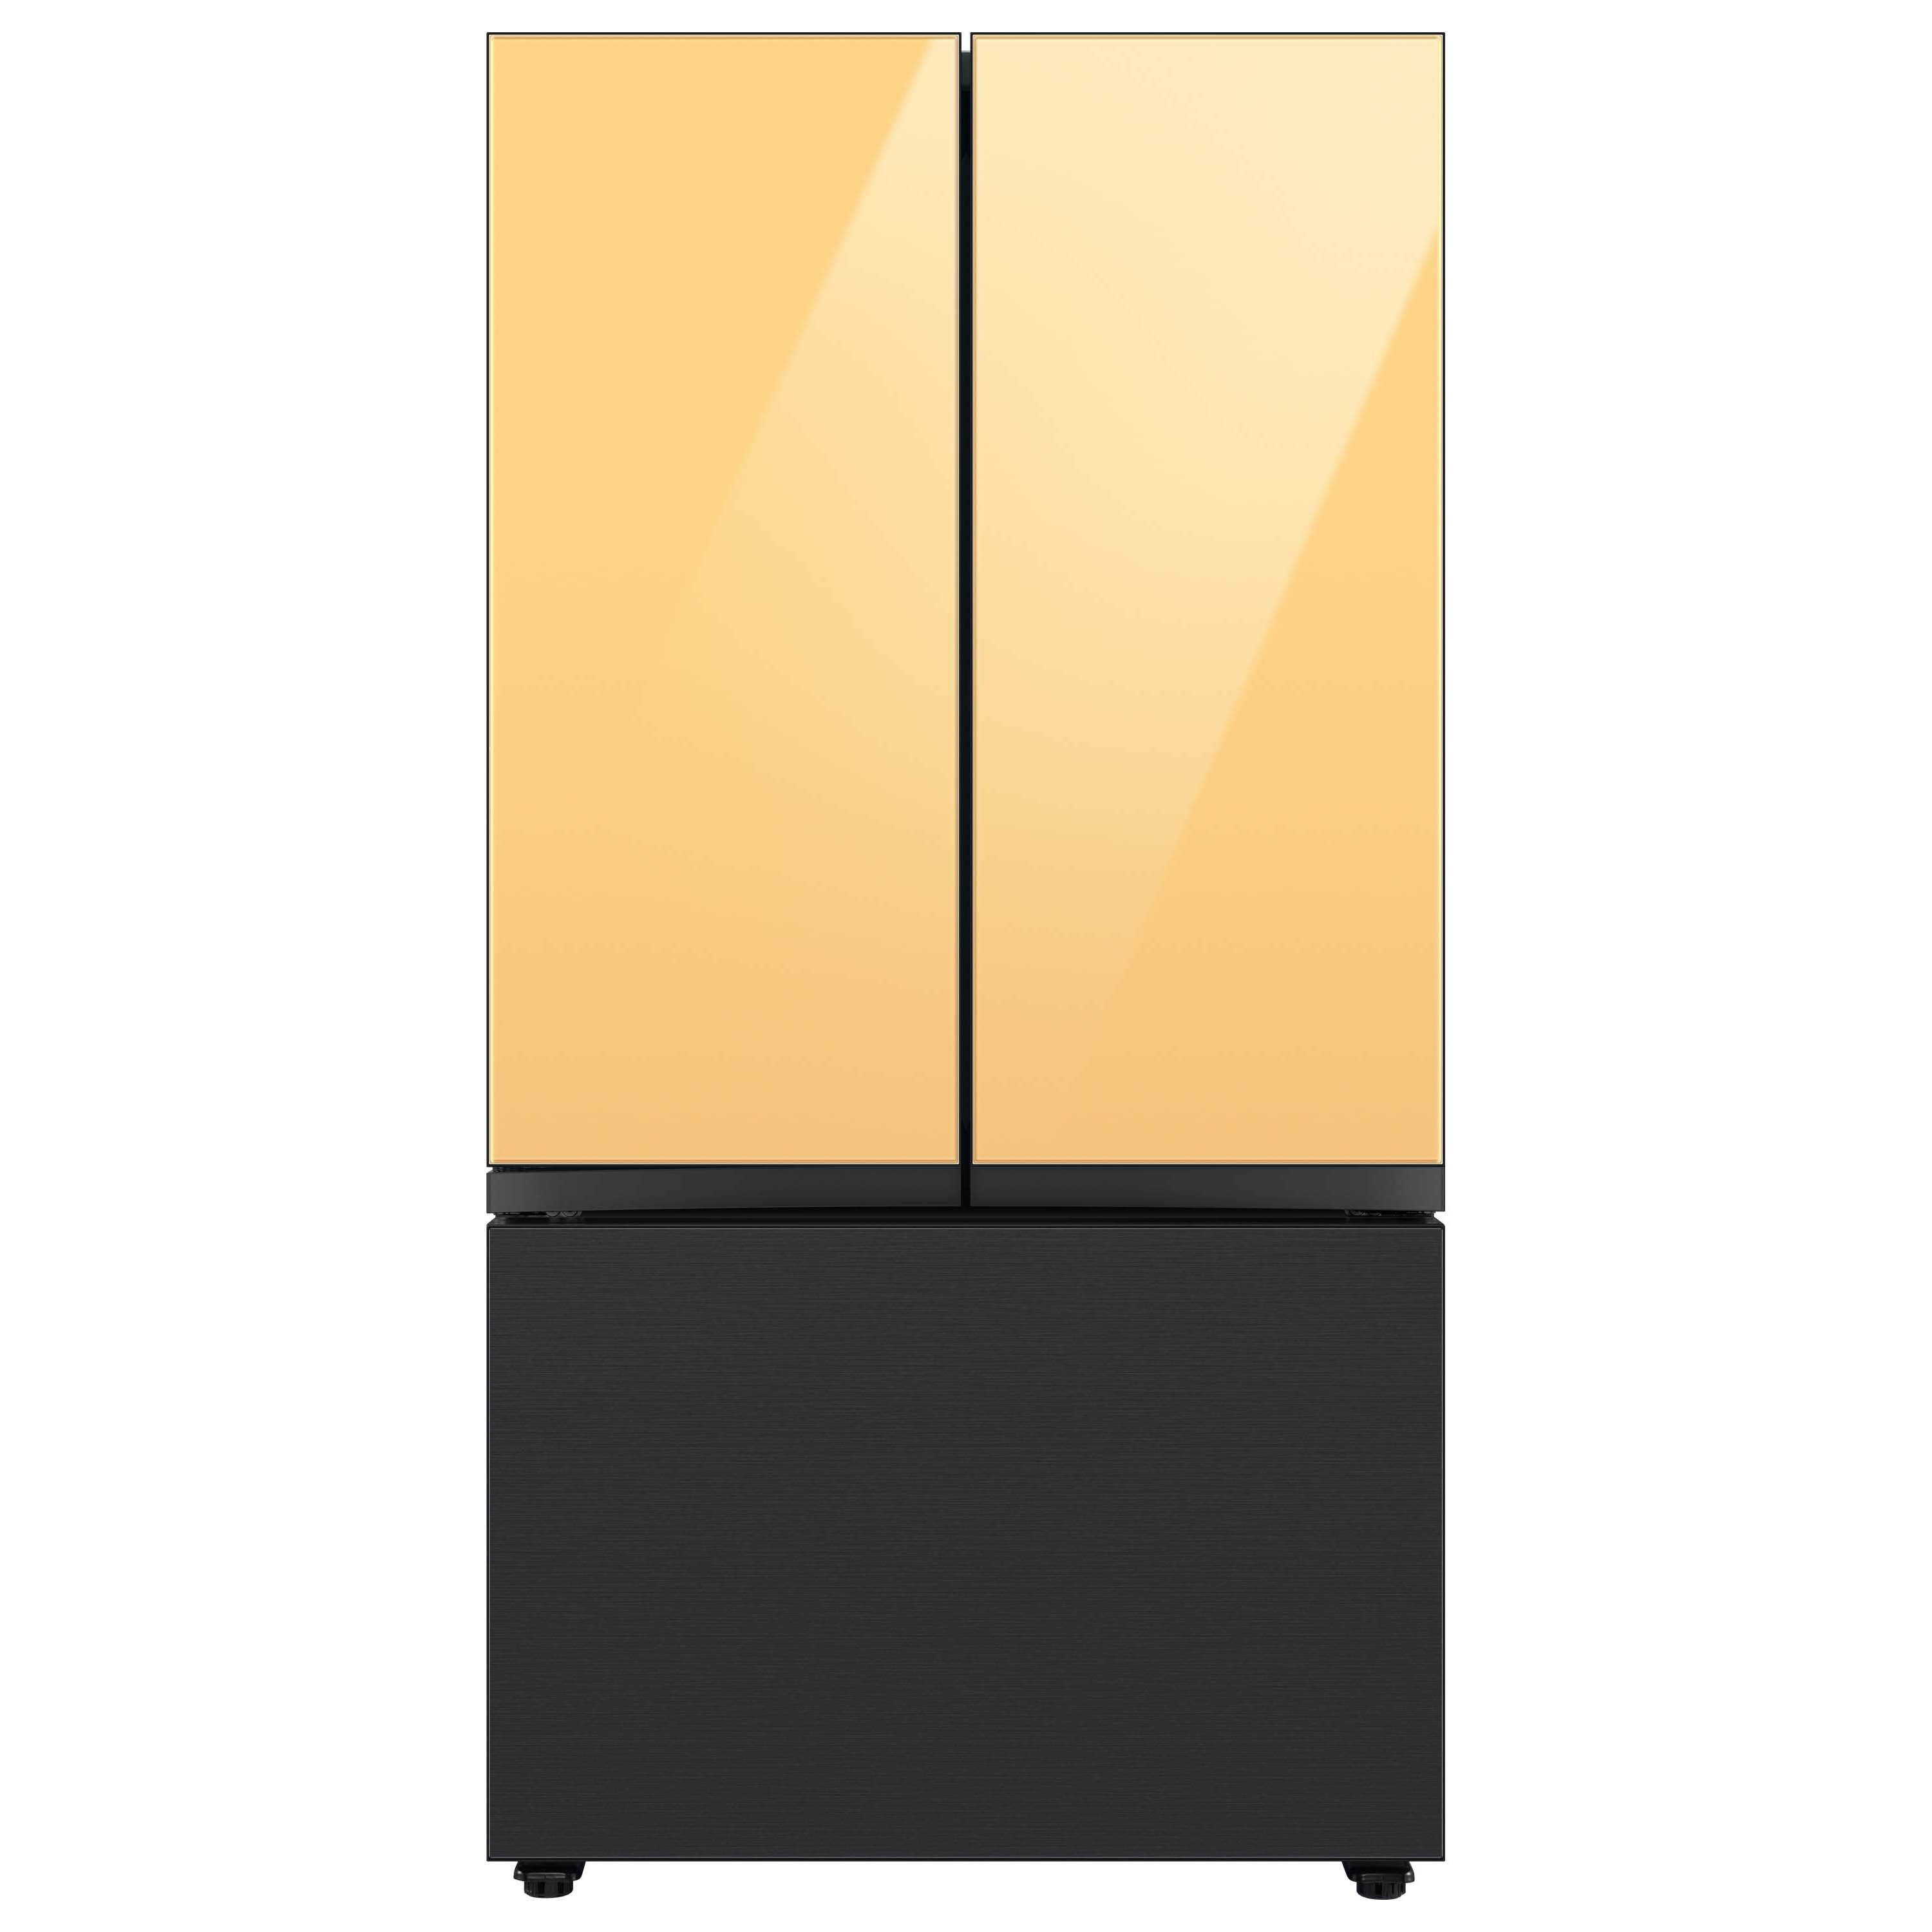 Samsung Bespoke 3-door French Door Refrigerator Bottom Panel In Matte ...